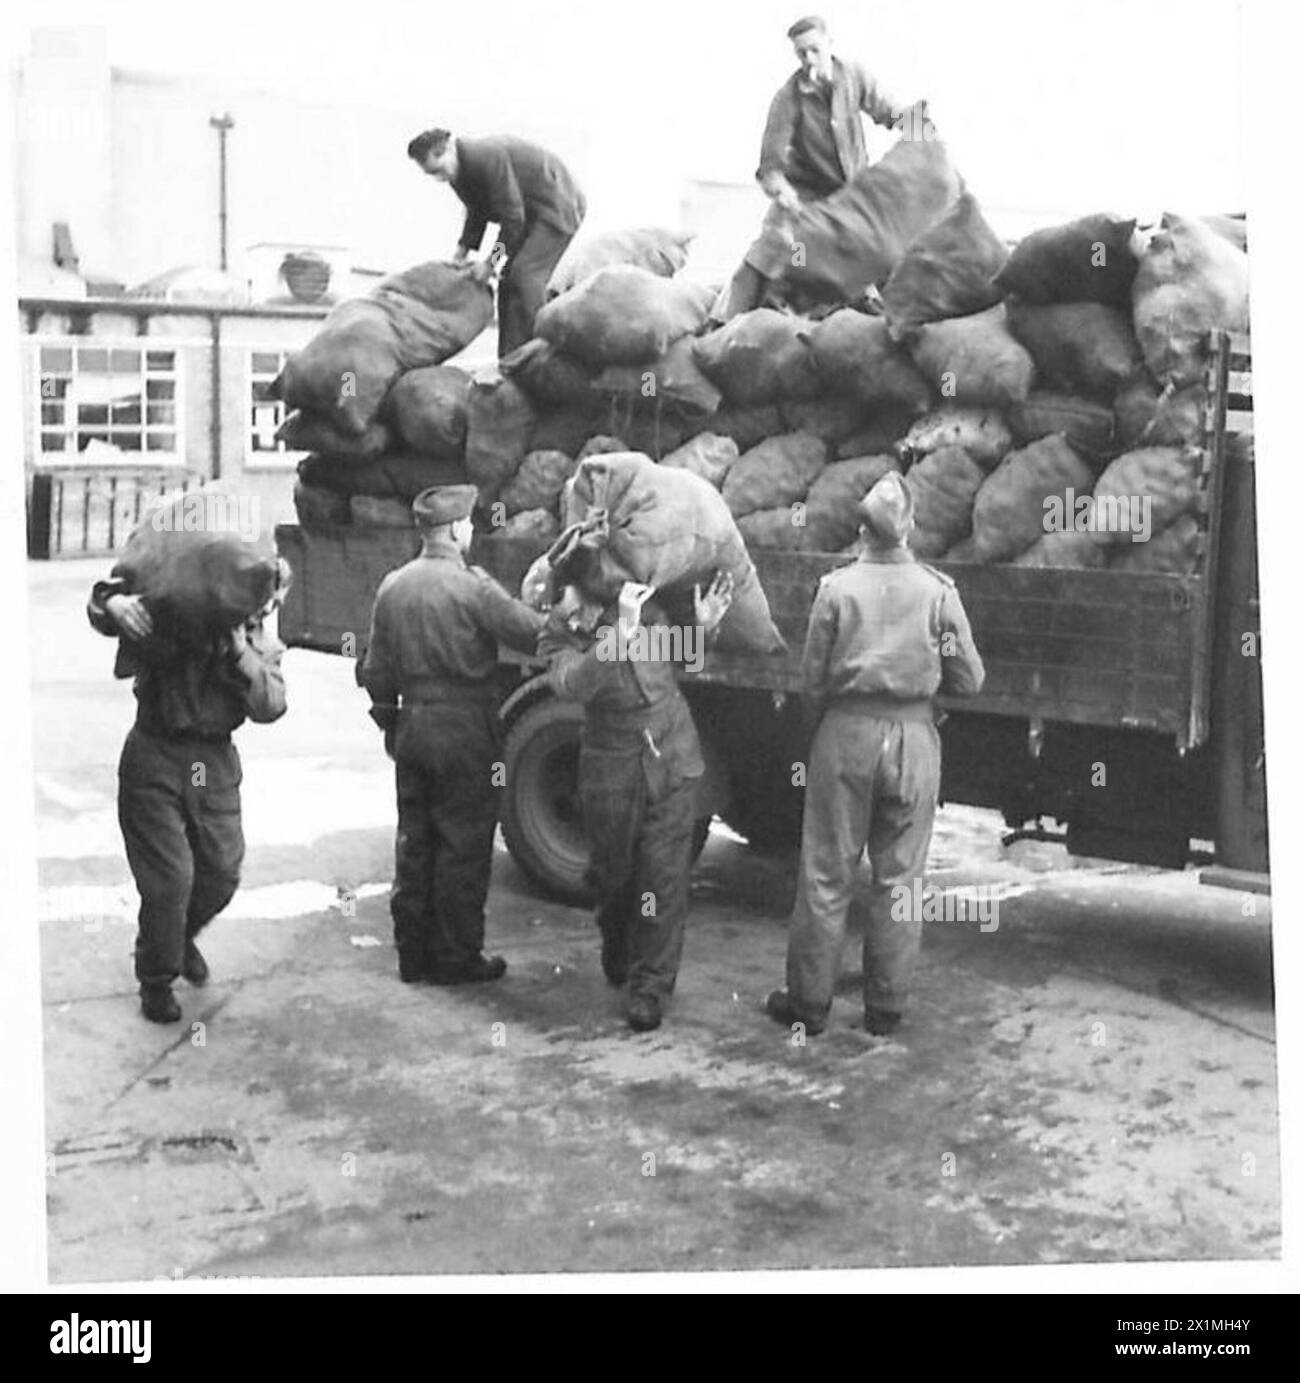 SCUOLA DI CUCINA ATS - le truppe scaricano sacchi di patate da un camion all'arrivo a scuola, British Army Foto Stock